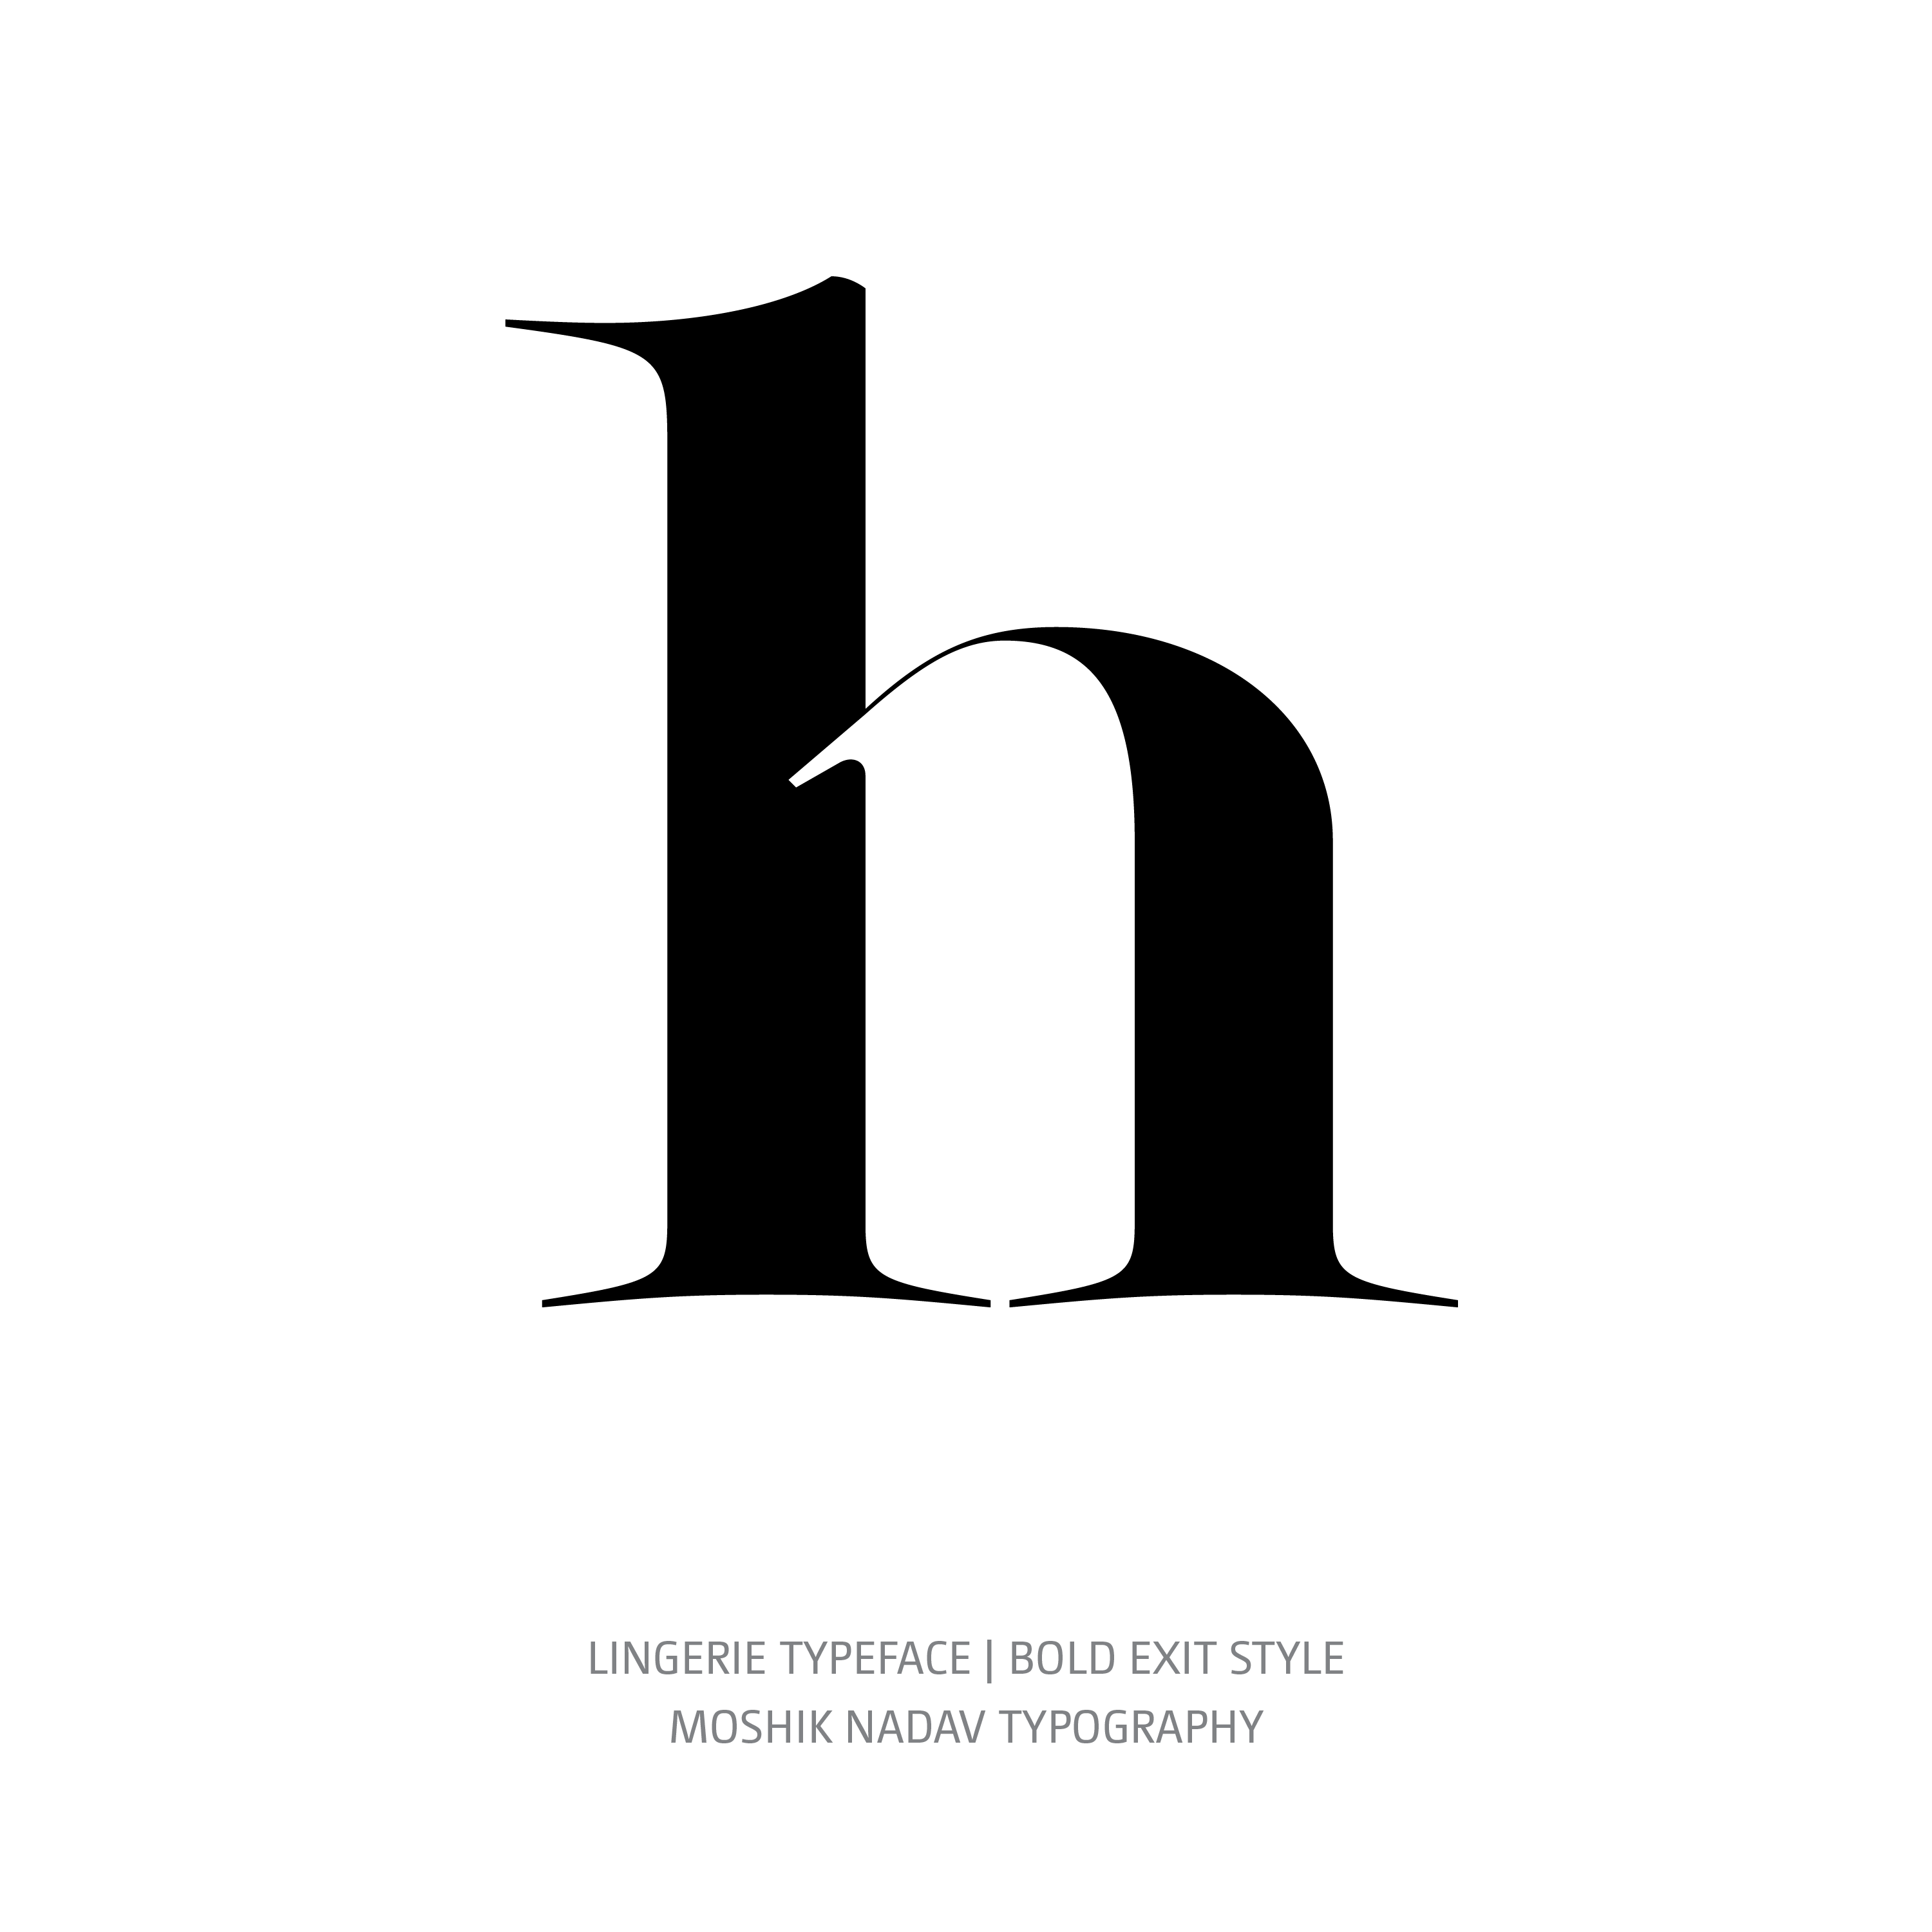 Lingerie Typeface Bold Exit h